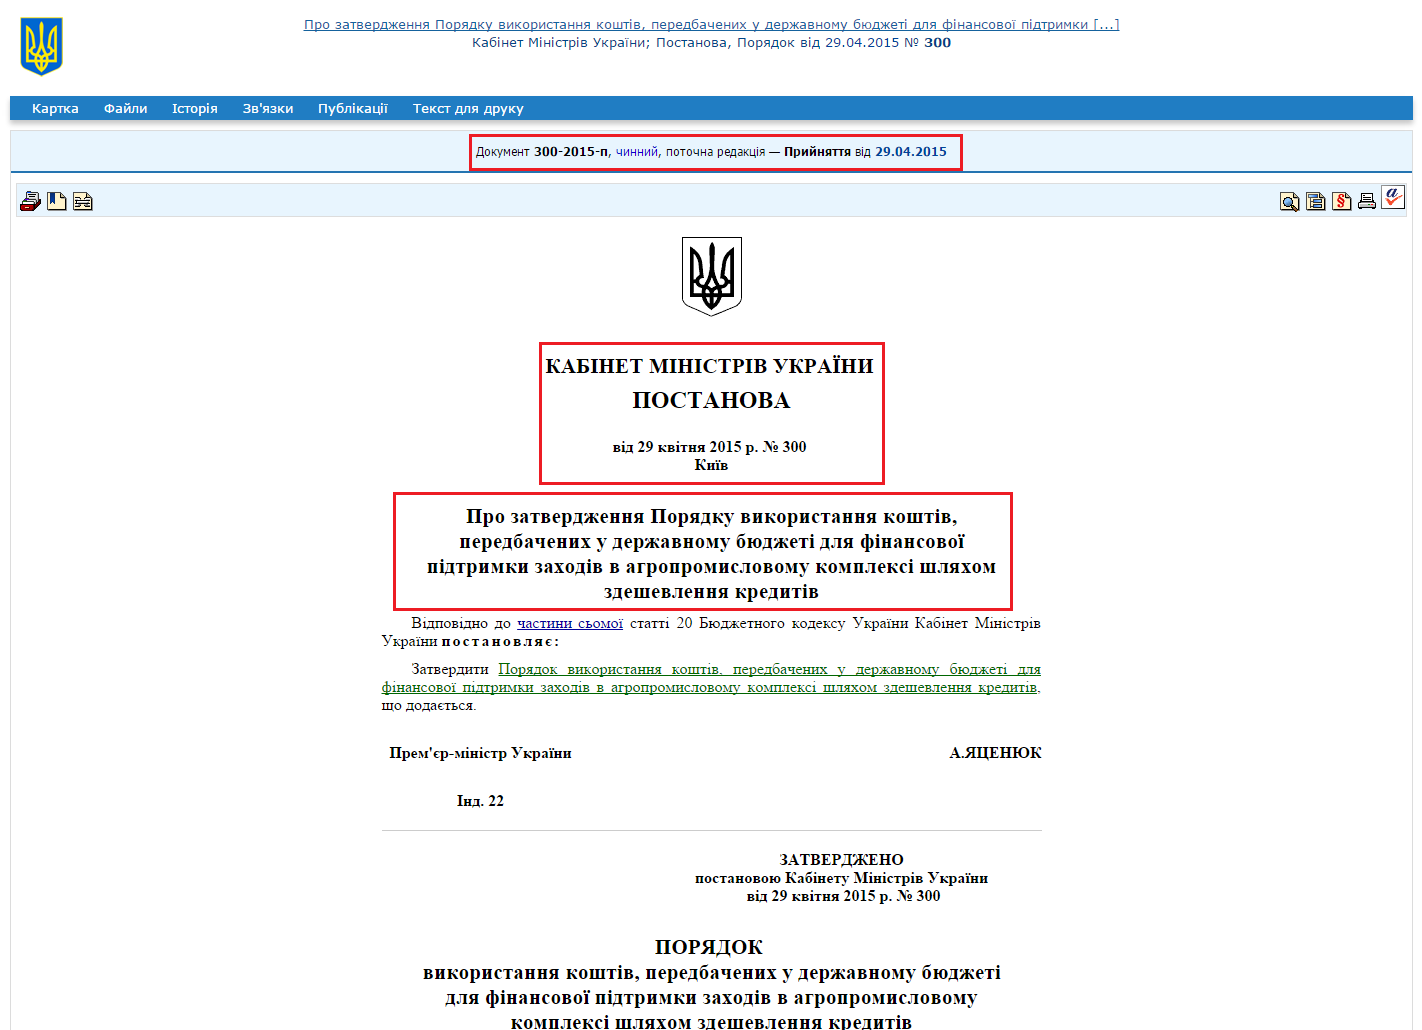 http://zakon2.rada.gov.ua/laws/show/300-2015-%D0%BF